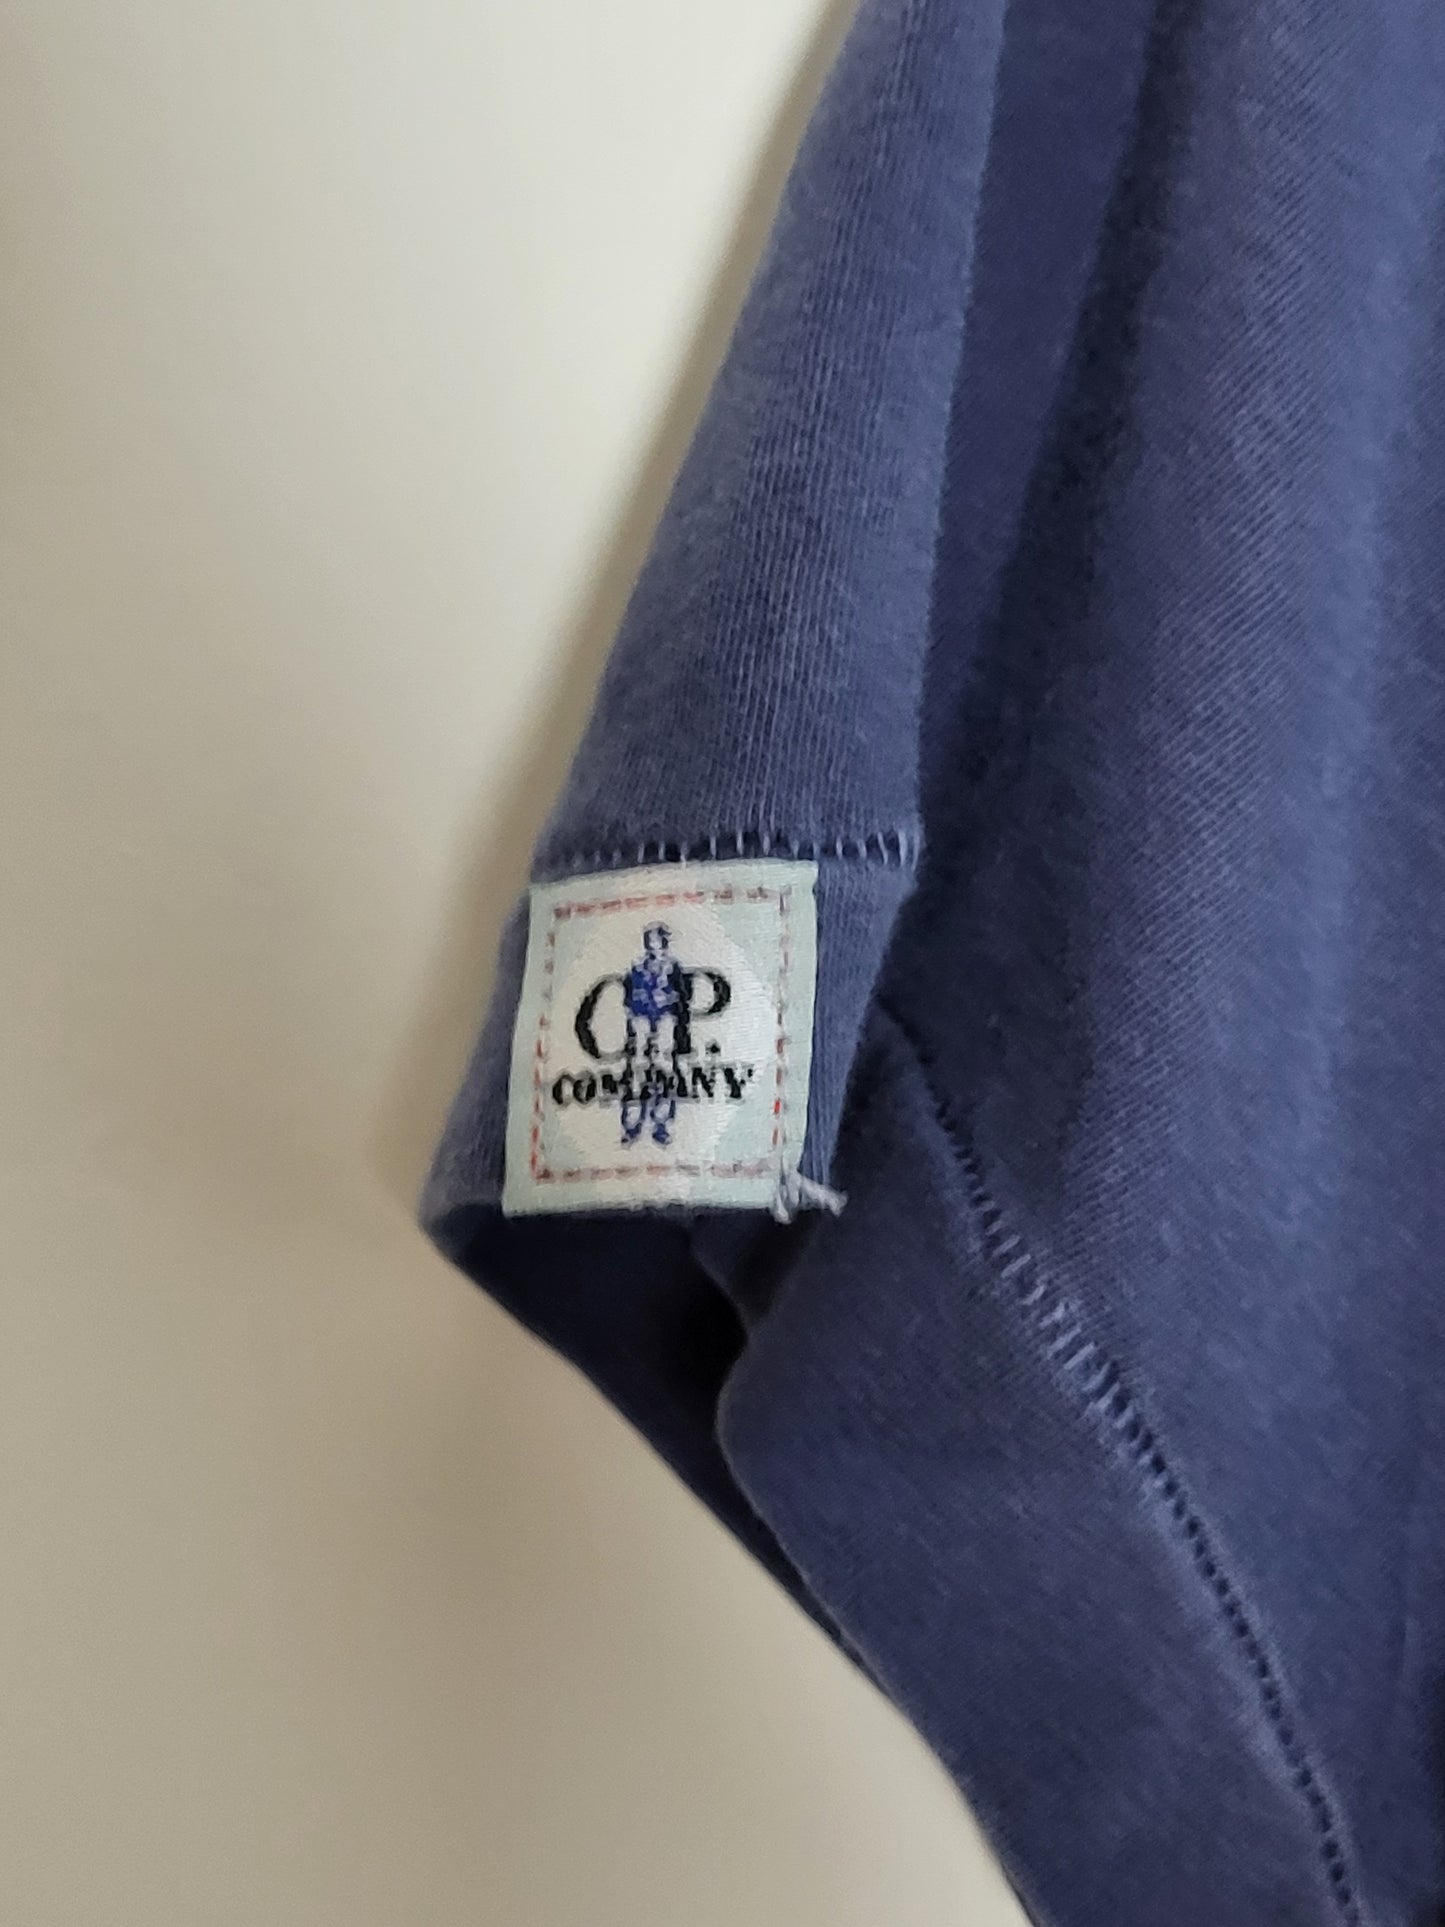 C.P. COMPANY - T-Shirt - Klassisch - Blaugrau - Herren - S